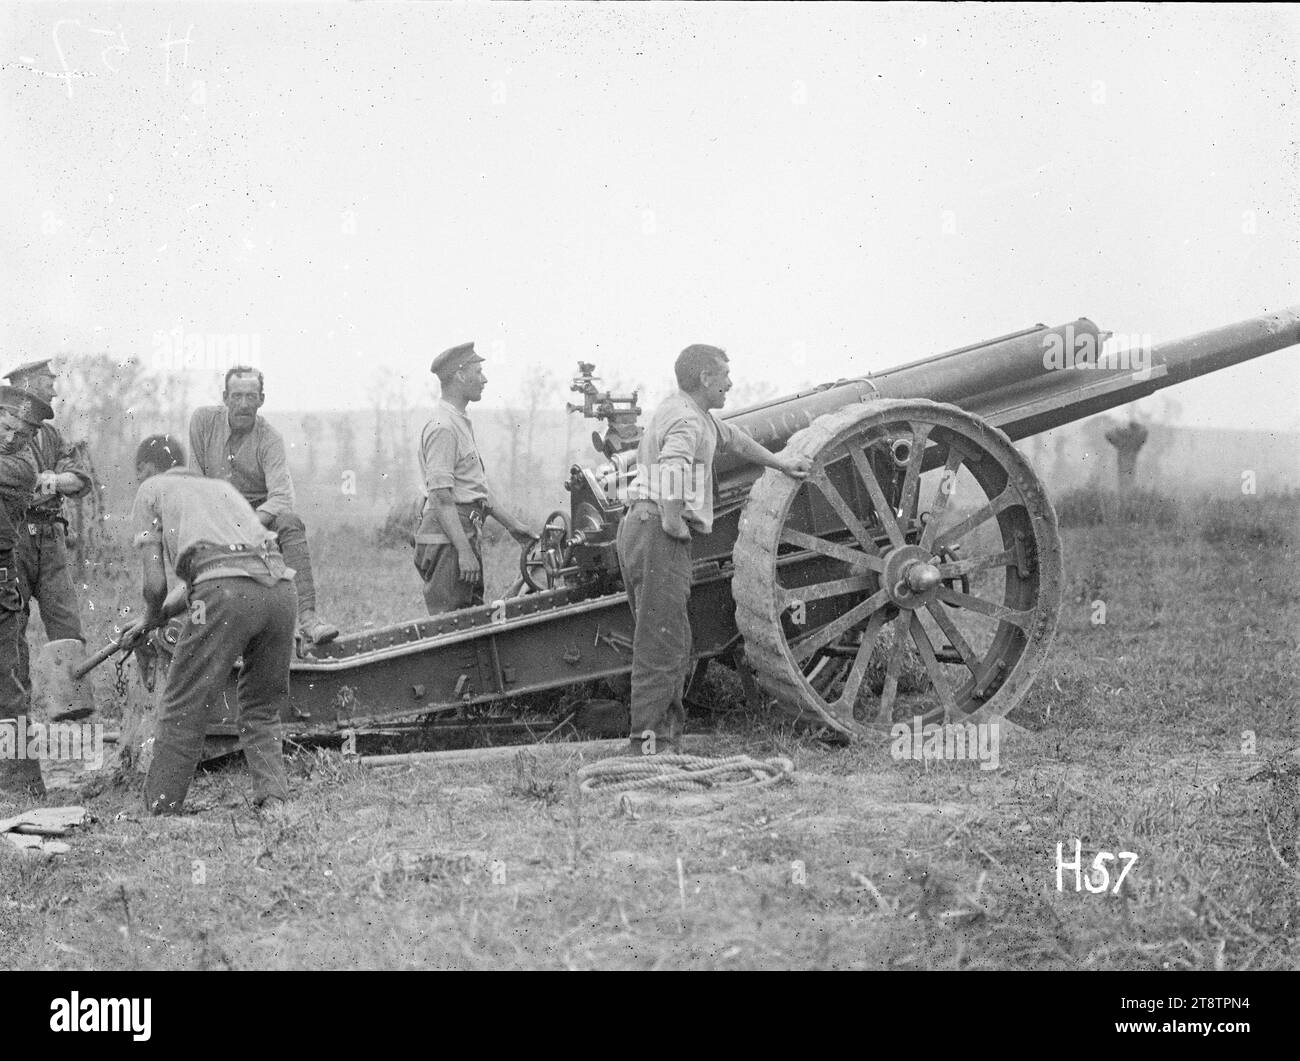 Un canon d'artillerie néo-zélandais et un équipage de canon à la bataille de Messines, Un canon d'artillerie néo-zélandais "Alice" avec son équipage de canon à la bataille de Messines, en Belgique, pendant la première Guerre mondiale Photographie prise le 8 juin 1917 Banque D'Images